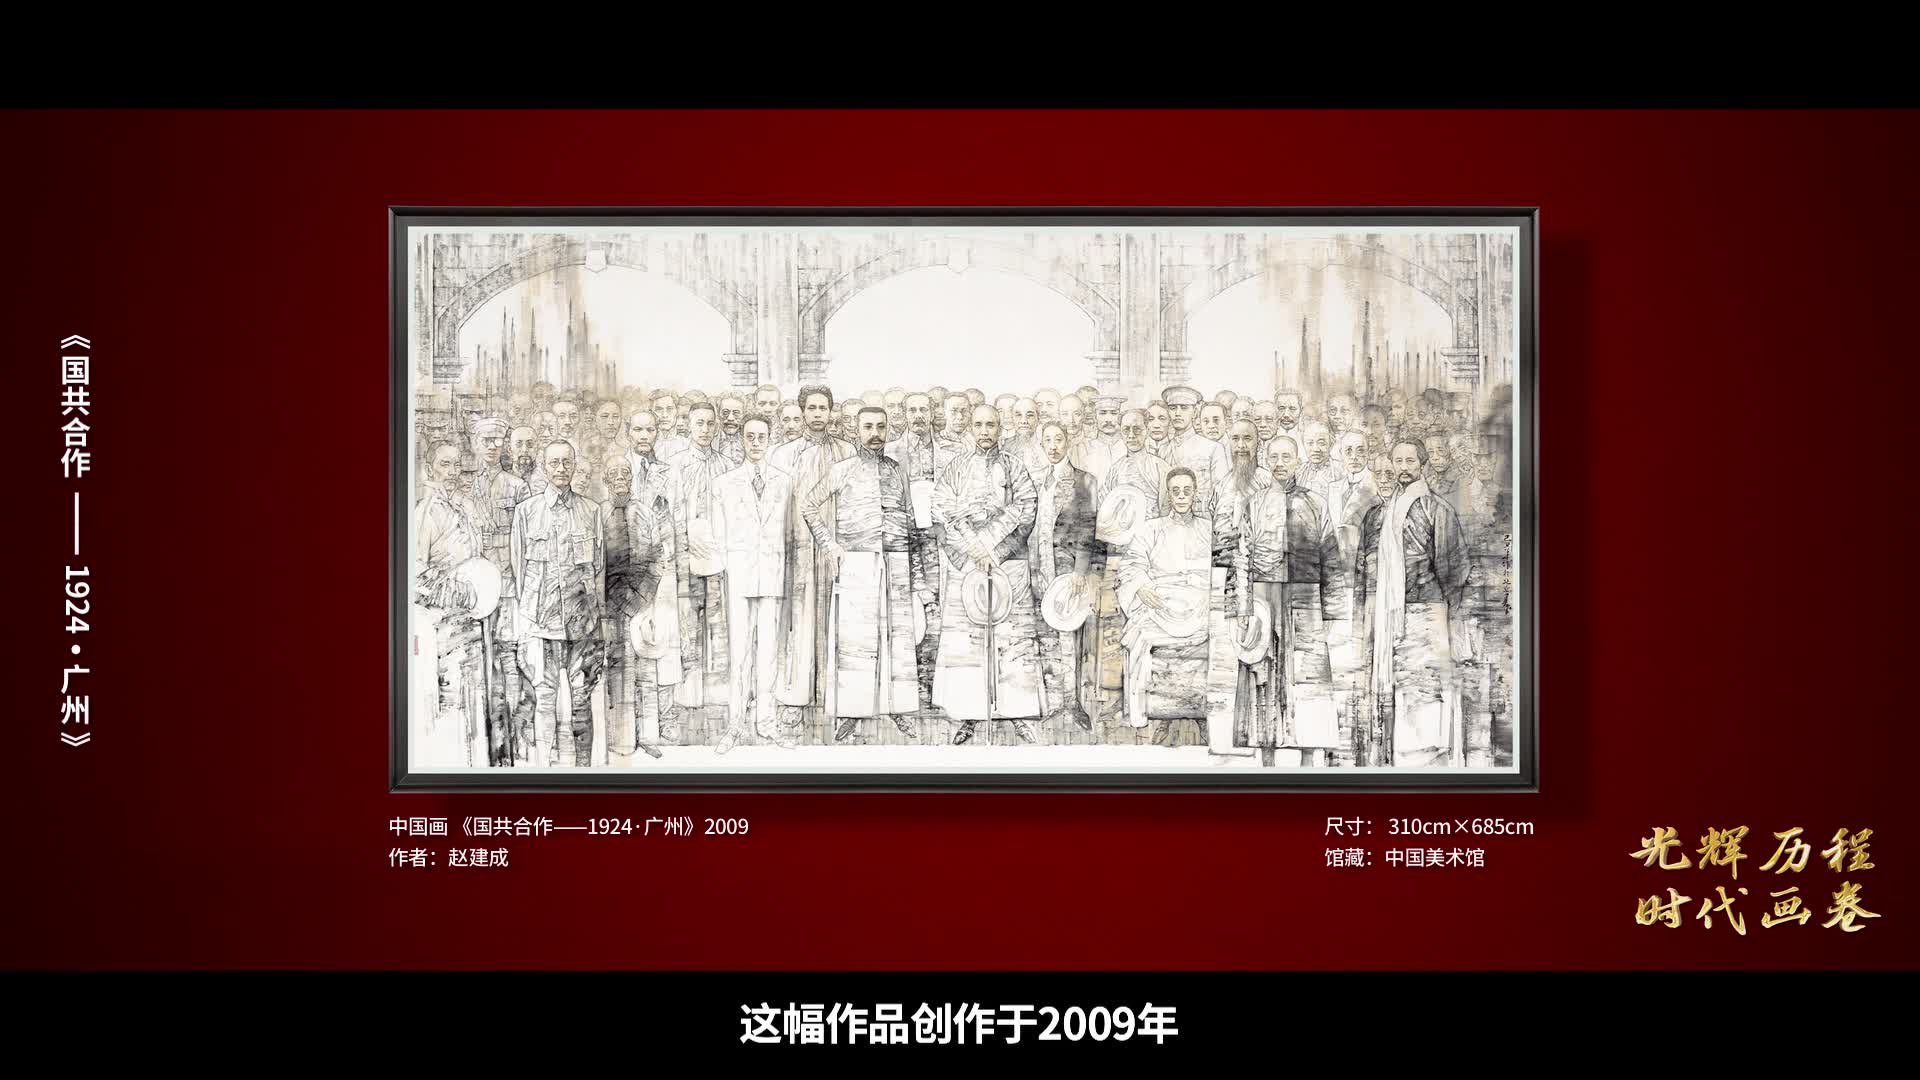 第5集《国共合作——1924·广州》